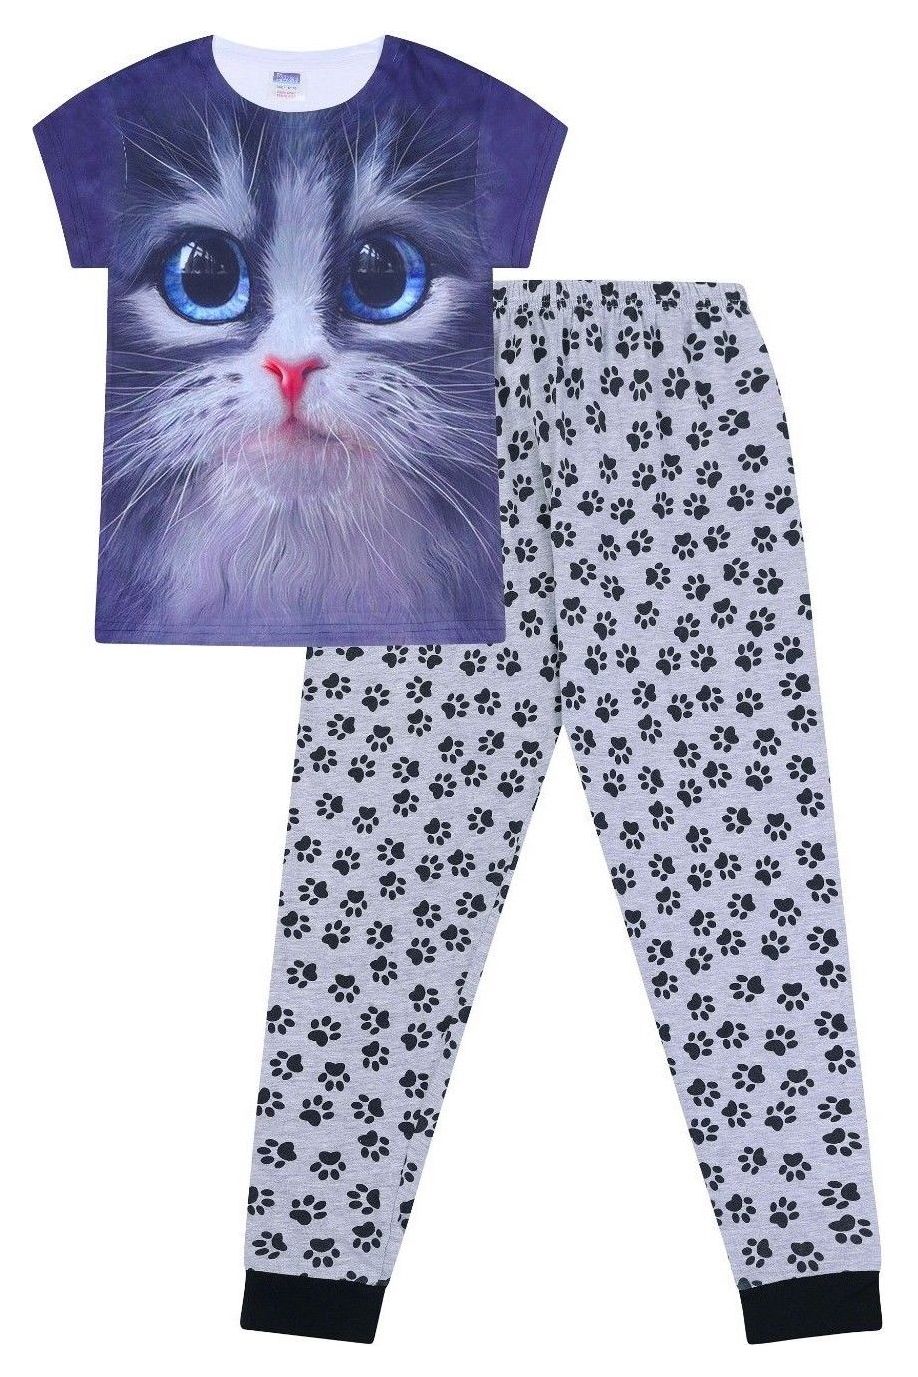 Girls Cat Paw Print Long Pyjamas - Pyjamas.com